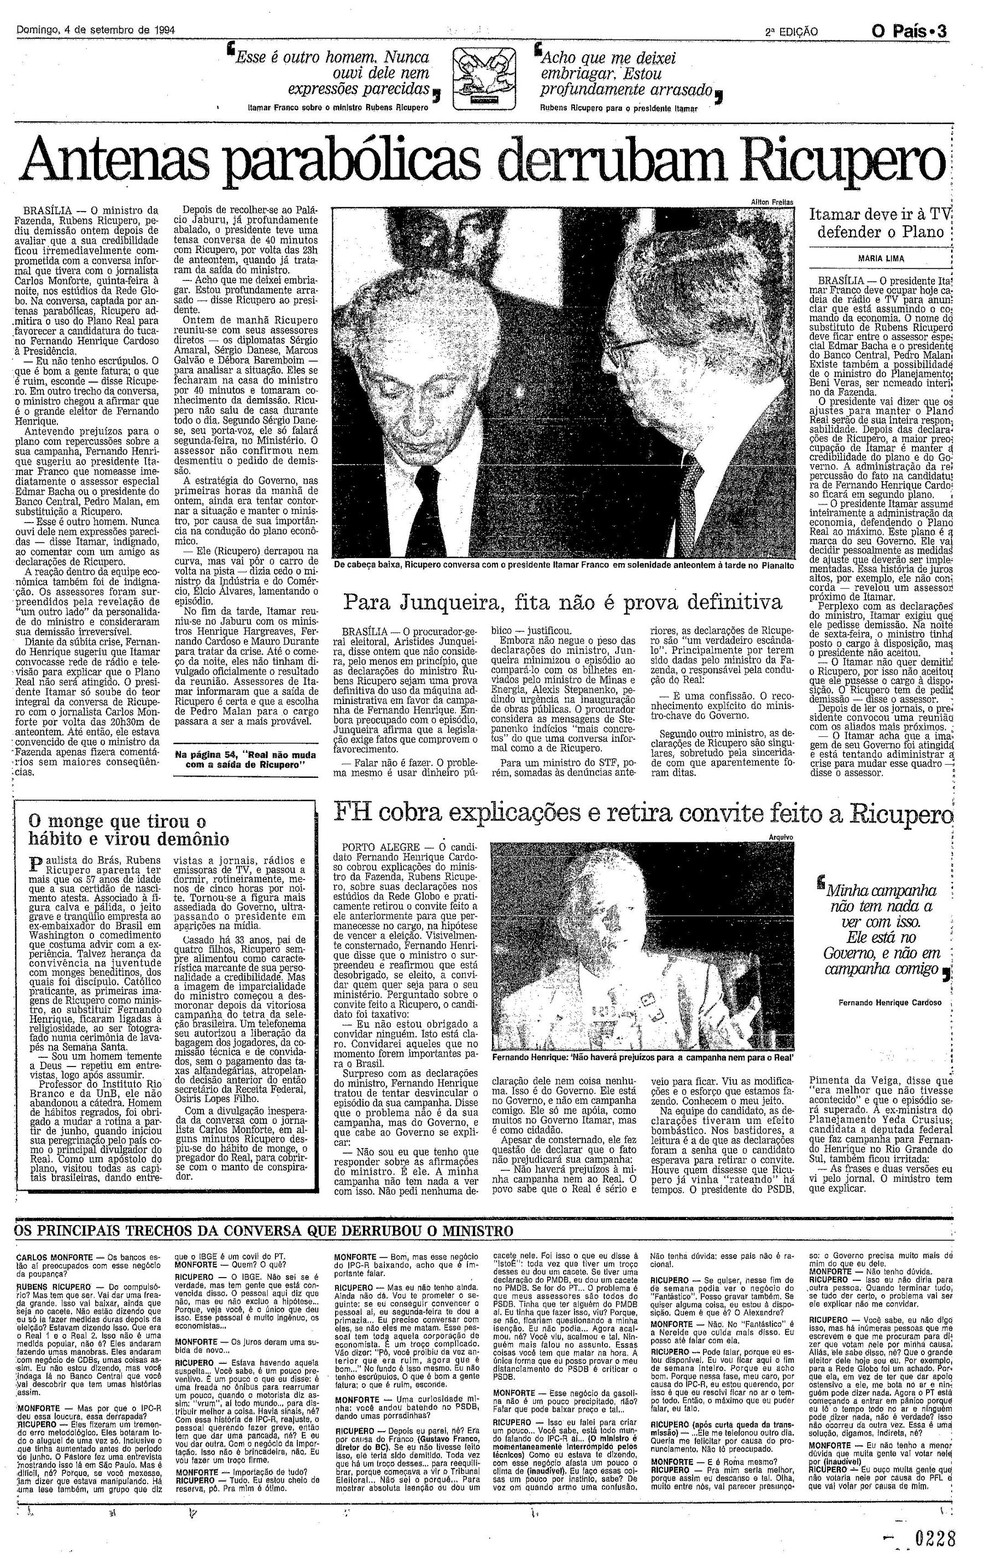 Página do Globo de 4 de setembro de 1994, informando sobre a queda do ministro Rubens Ricupero — Foto: Acervo